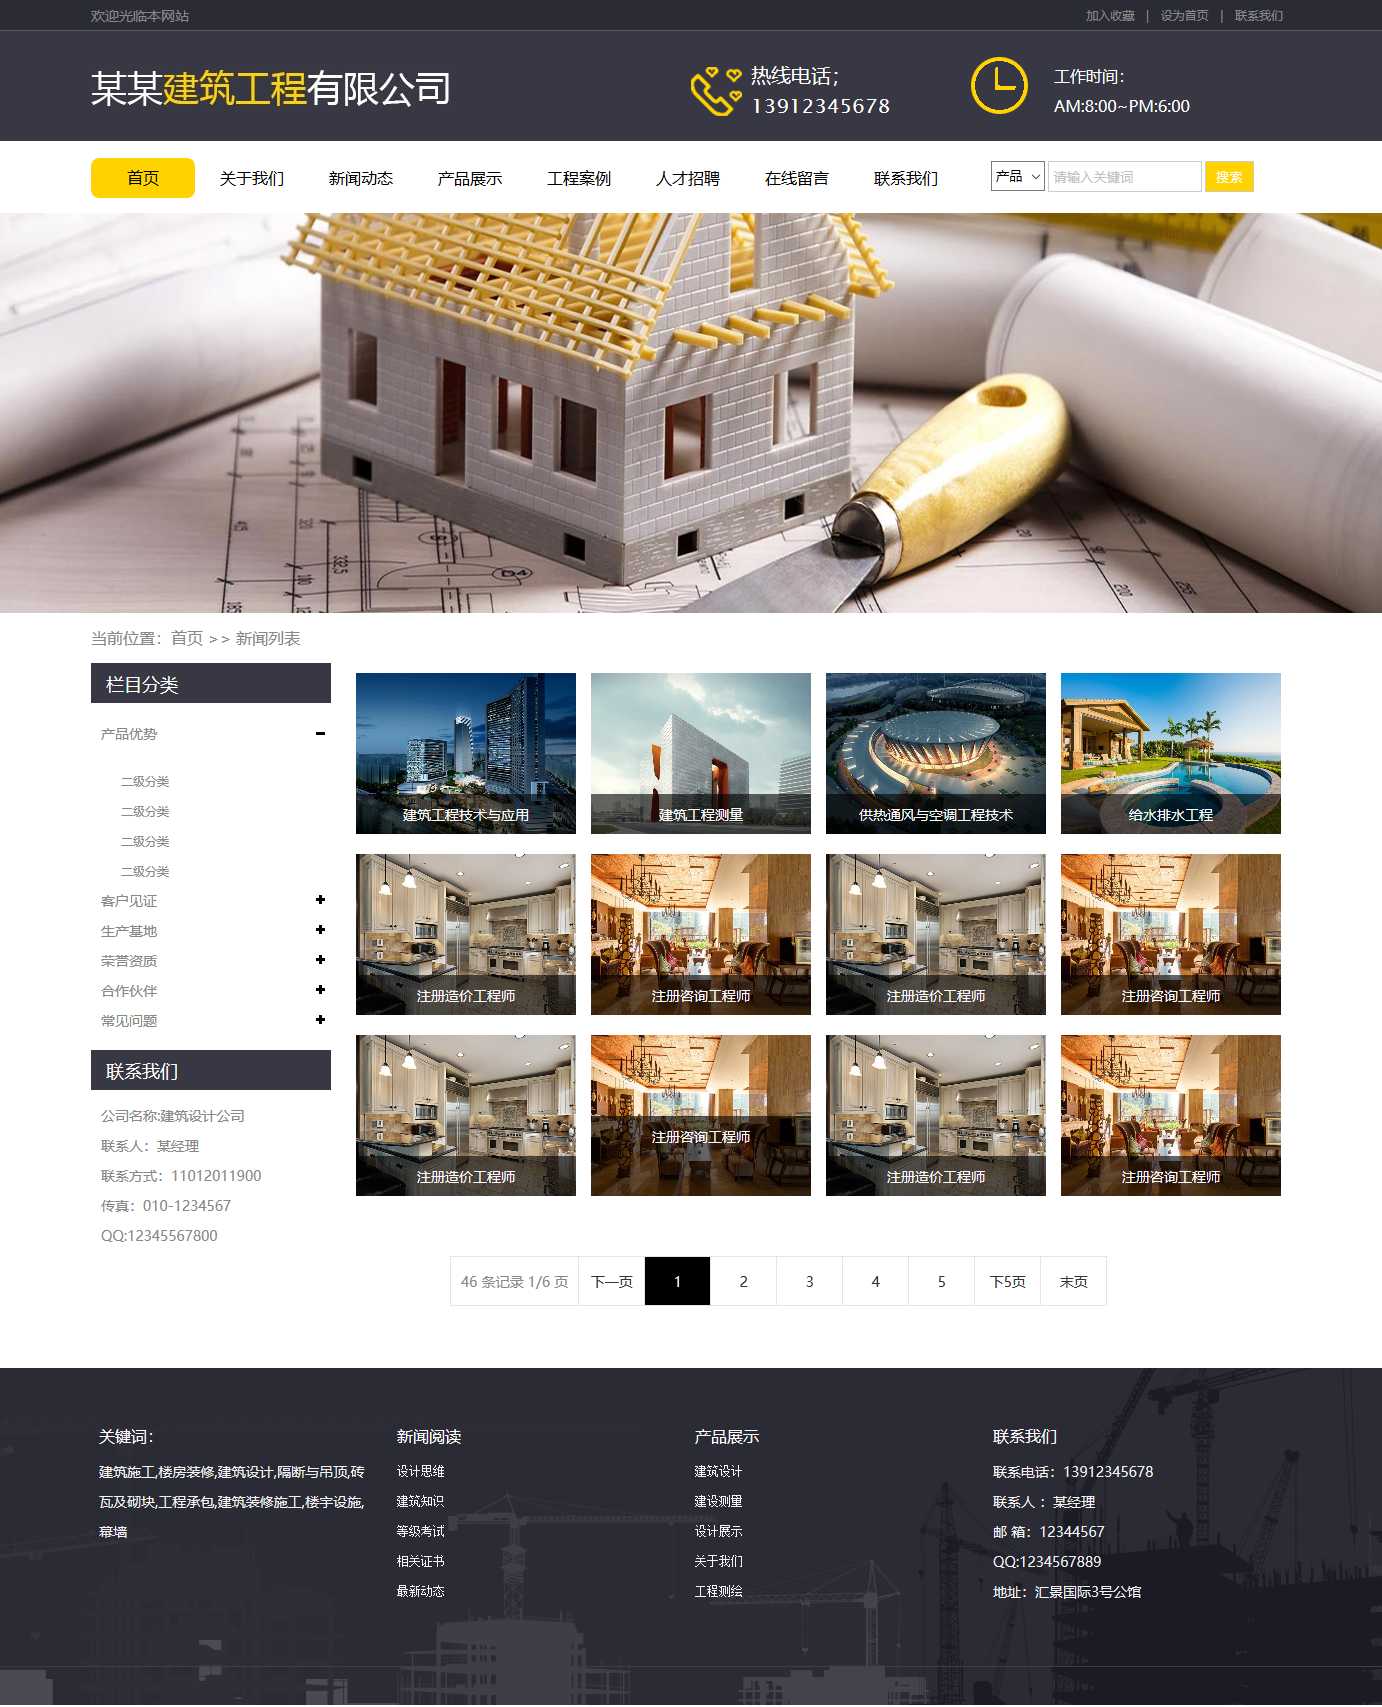 建筑施工,楼房装修,工程承包公司网站图片列表效果图